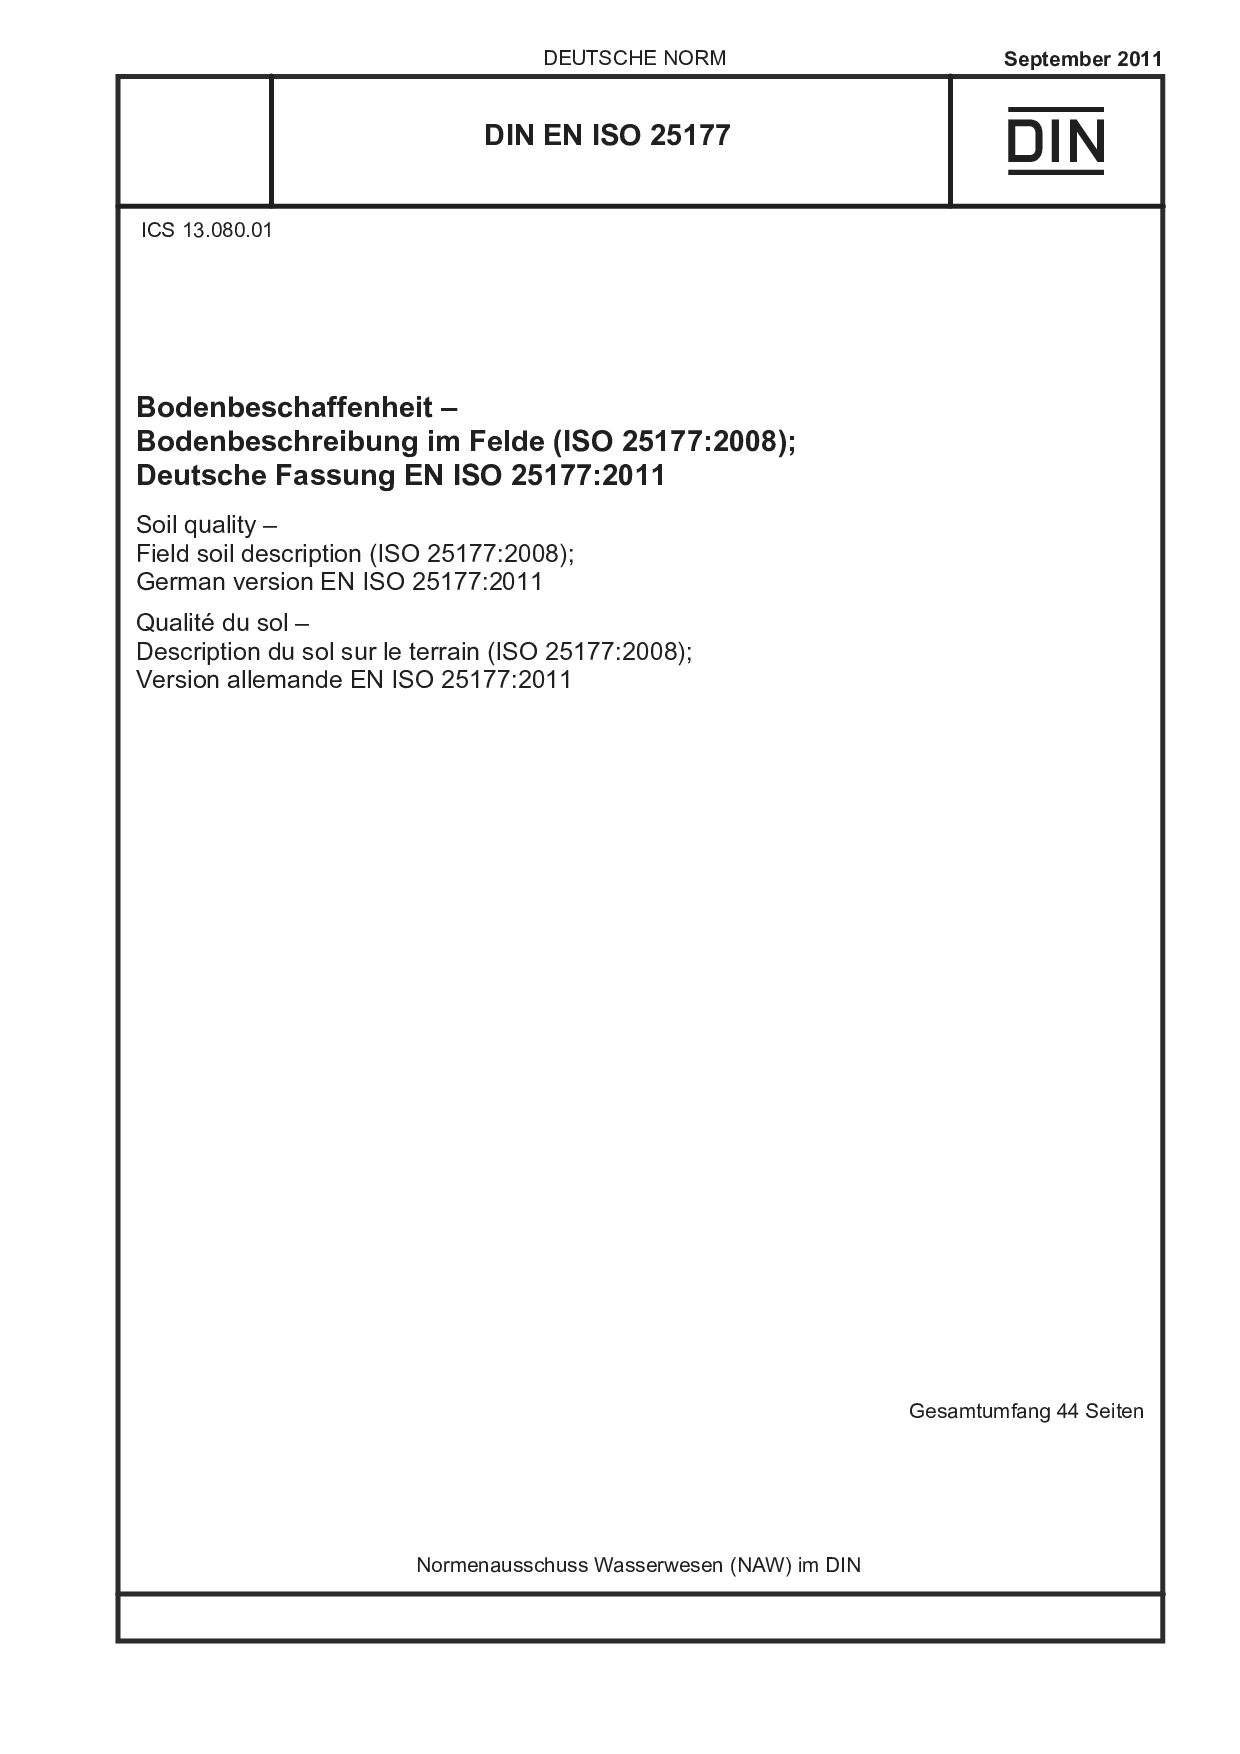 DIN EN ISO 25177:2011封面图